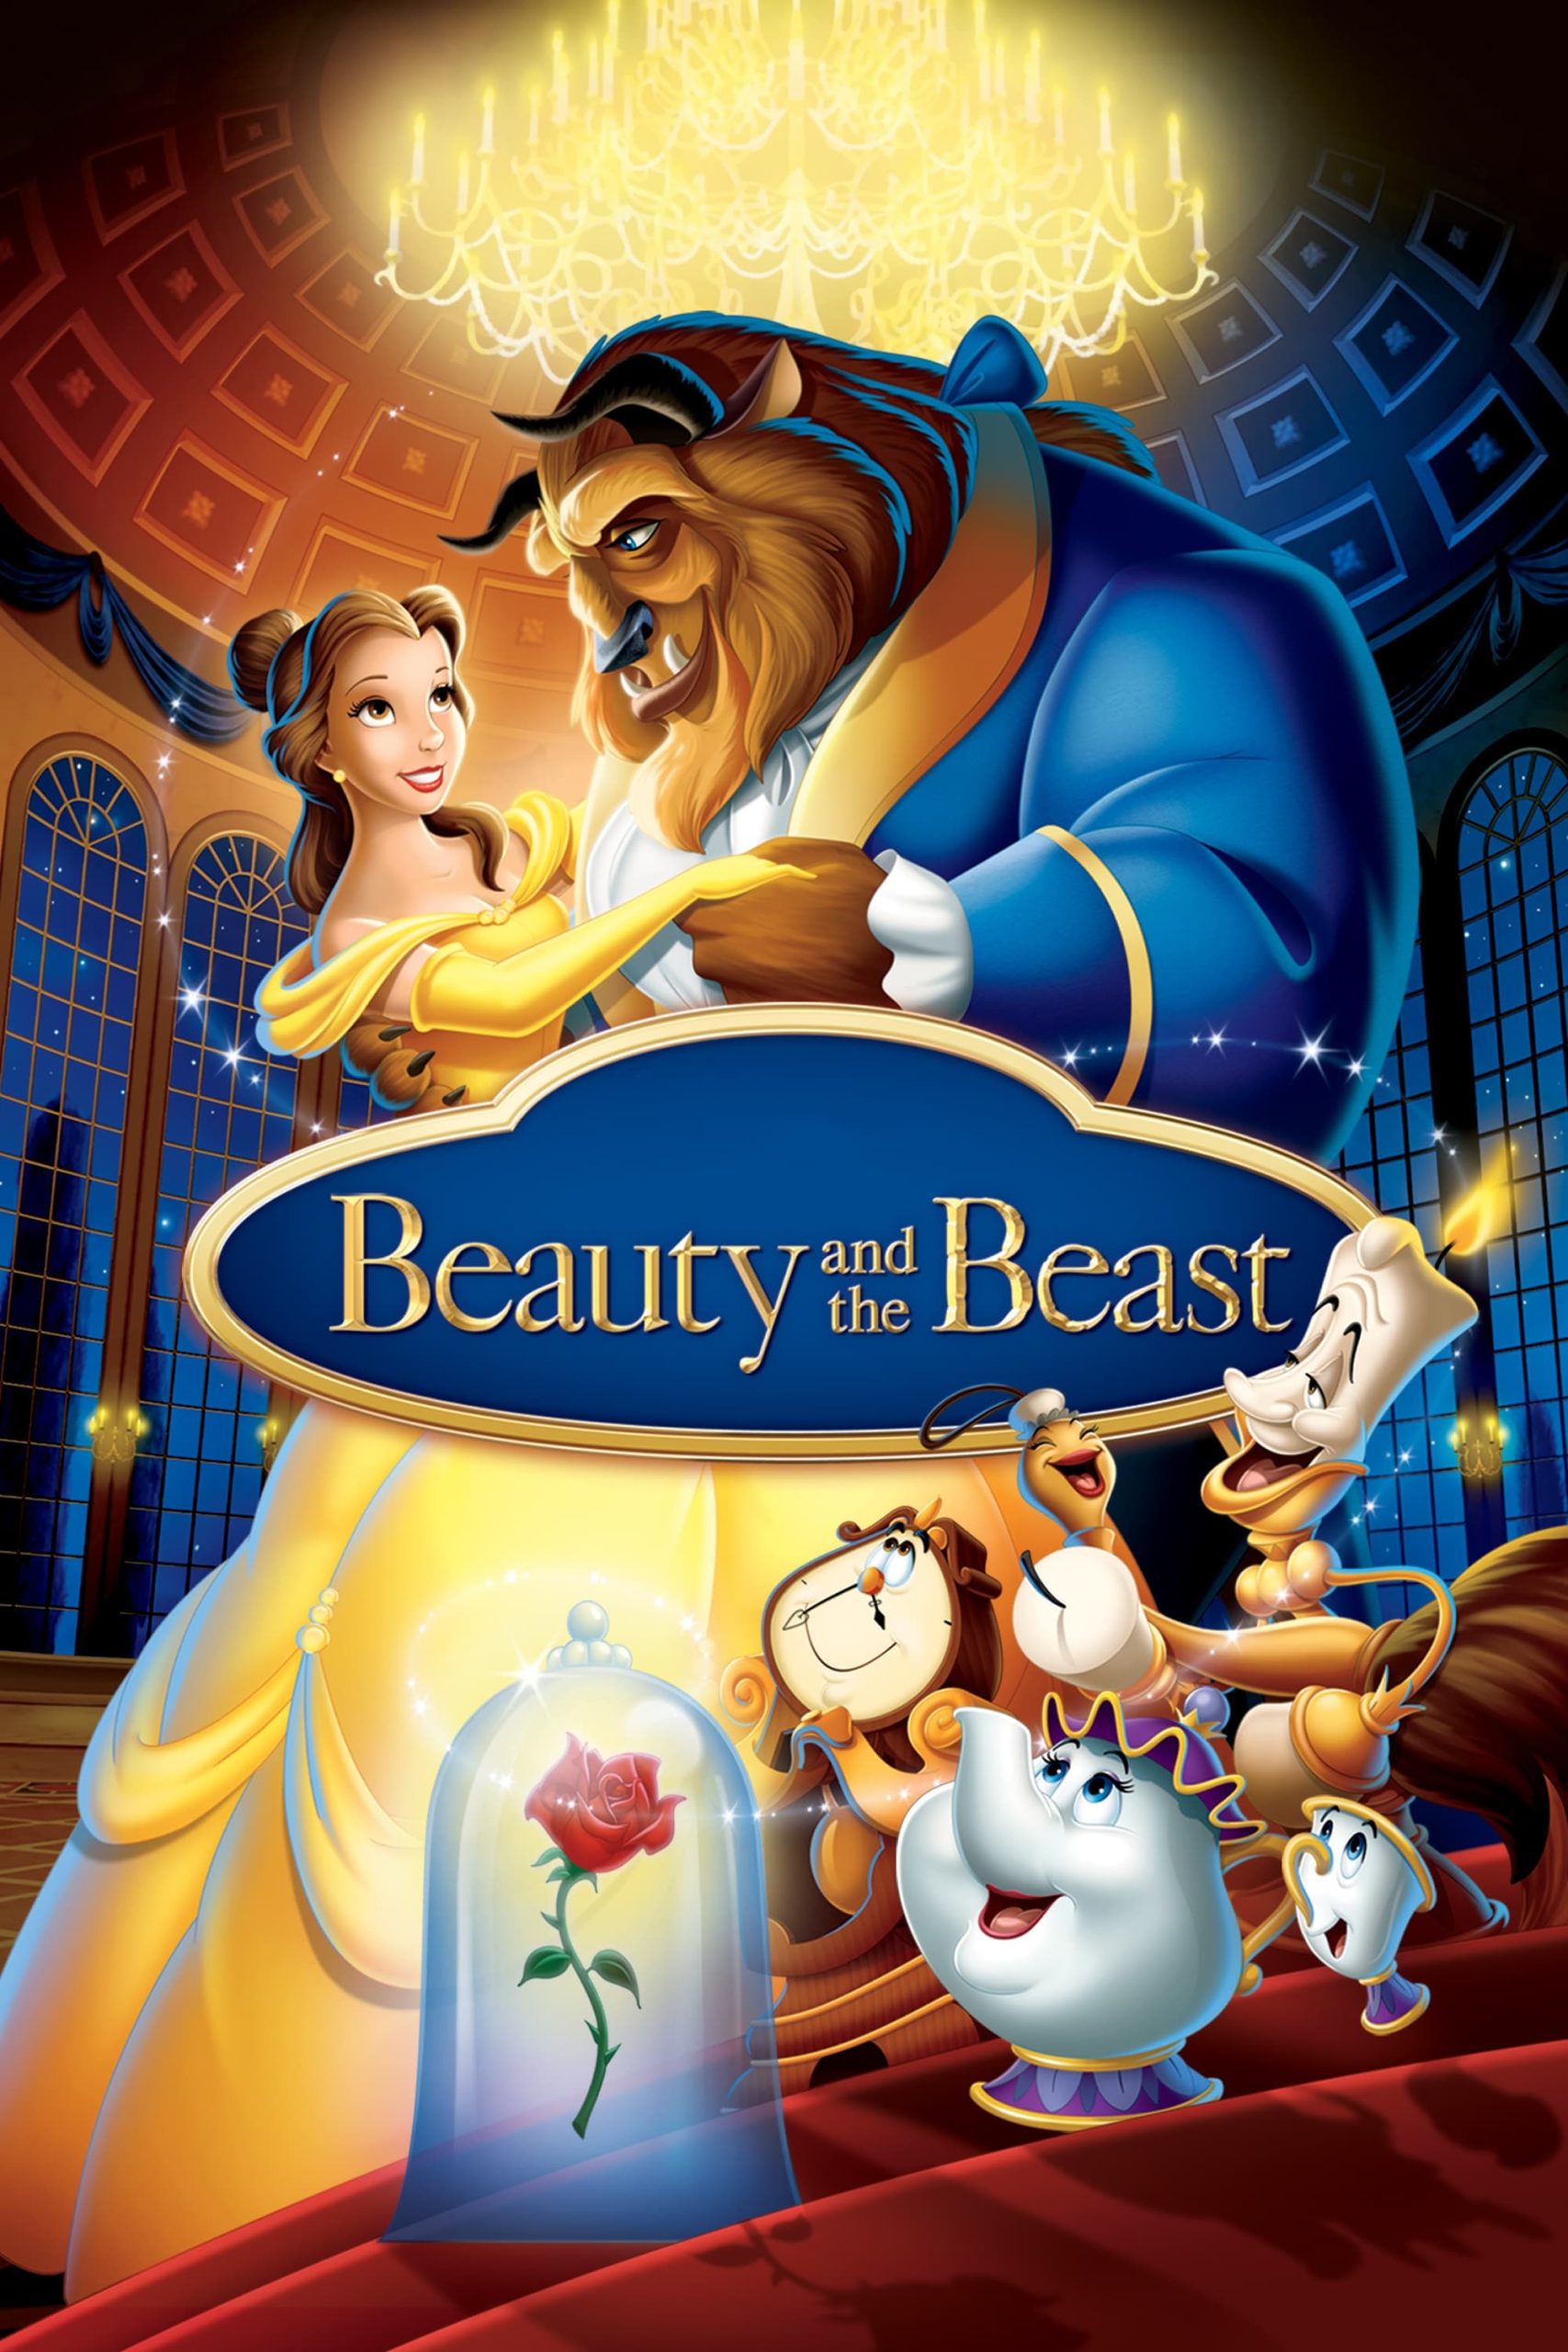 ดูหนังออนไลน์ฟรี Beauty and the Beast โฉมงามกับเจ้าชายอสูร